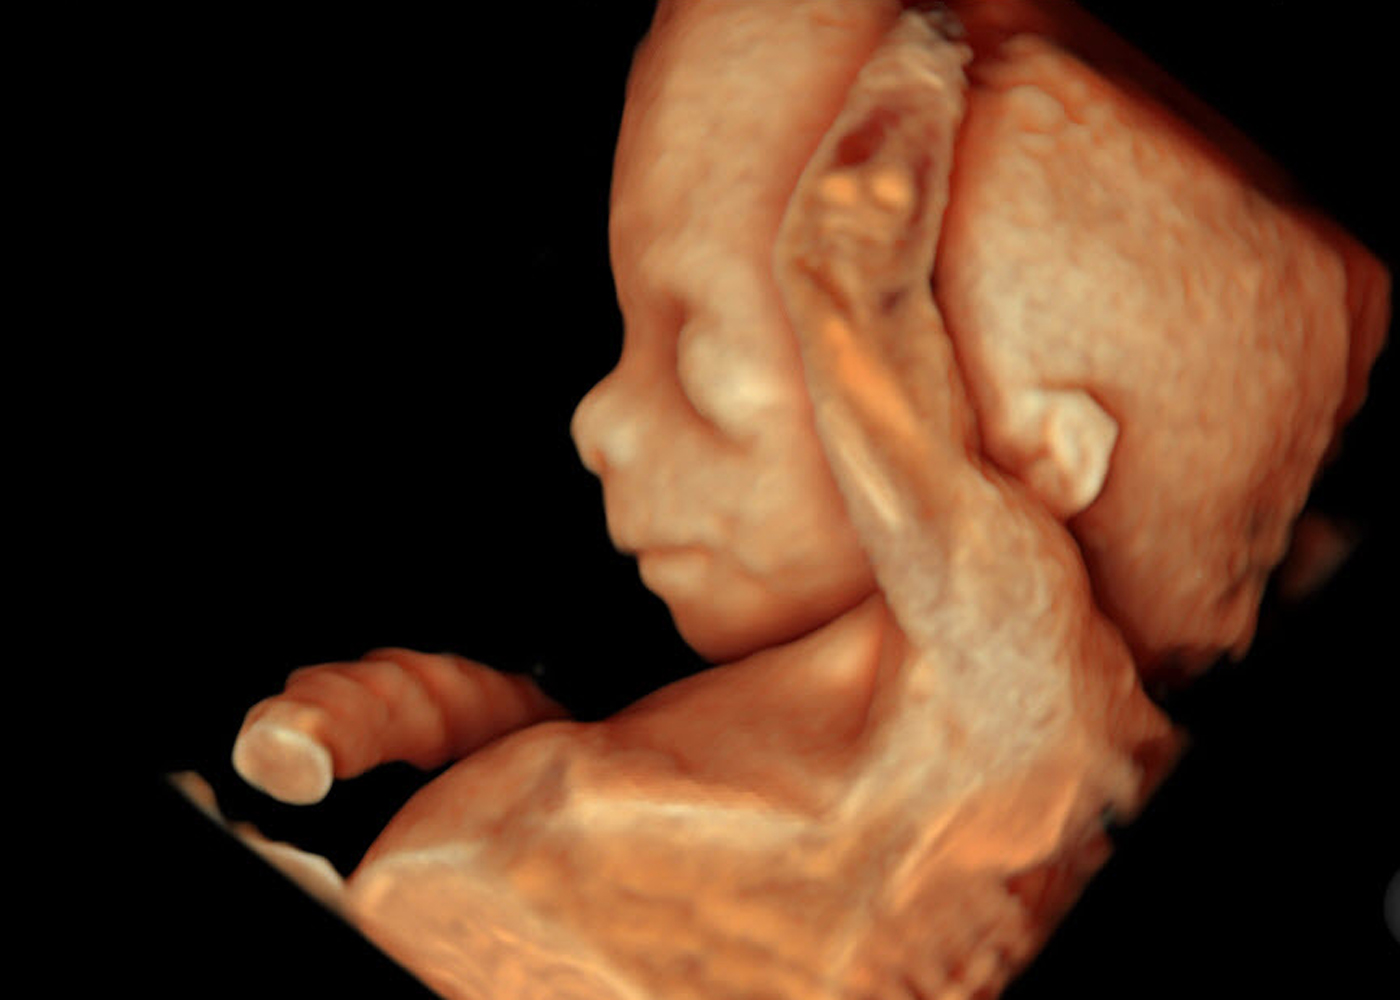 Gestation: 15 weeks.